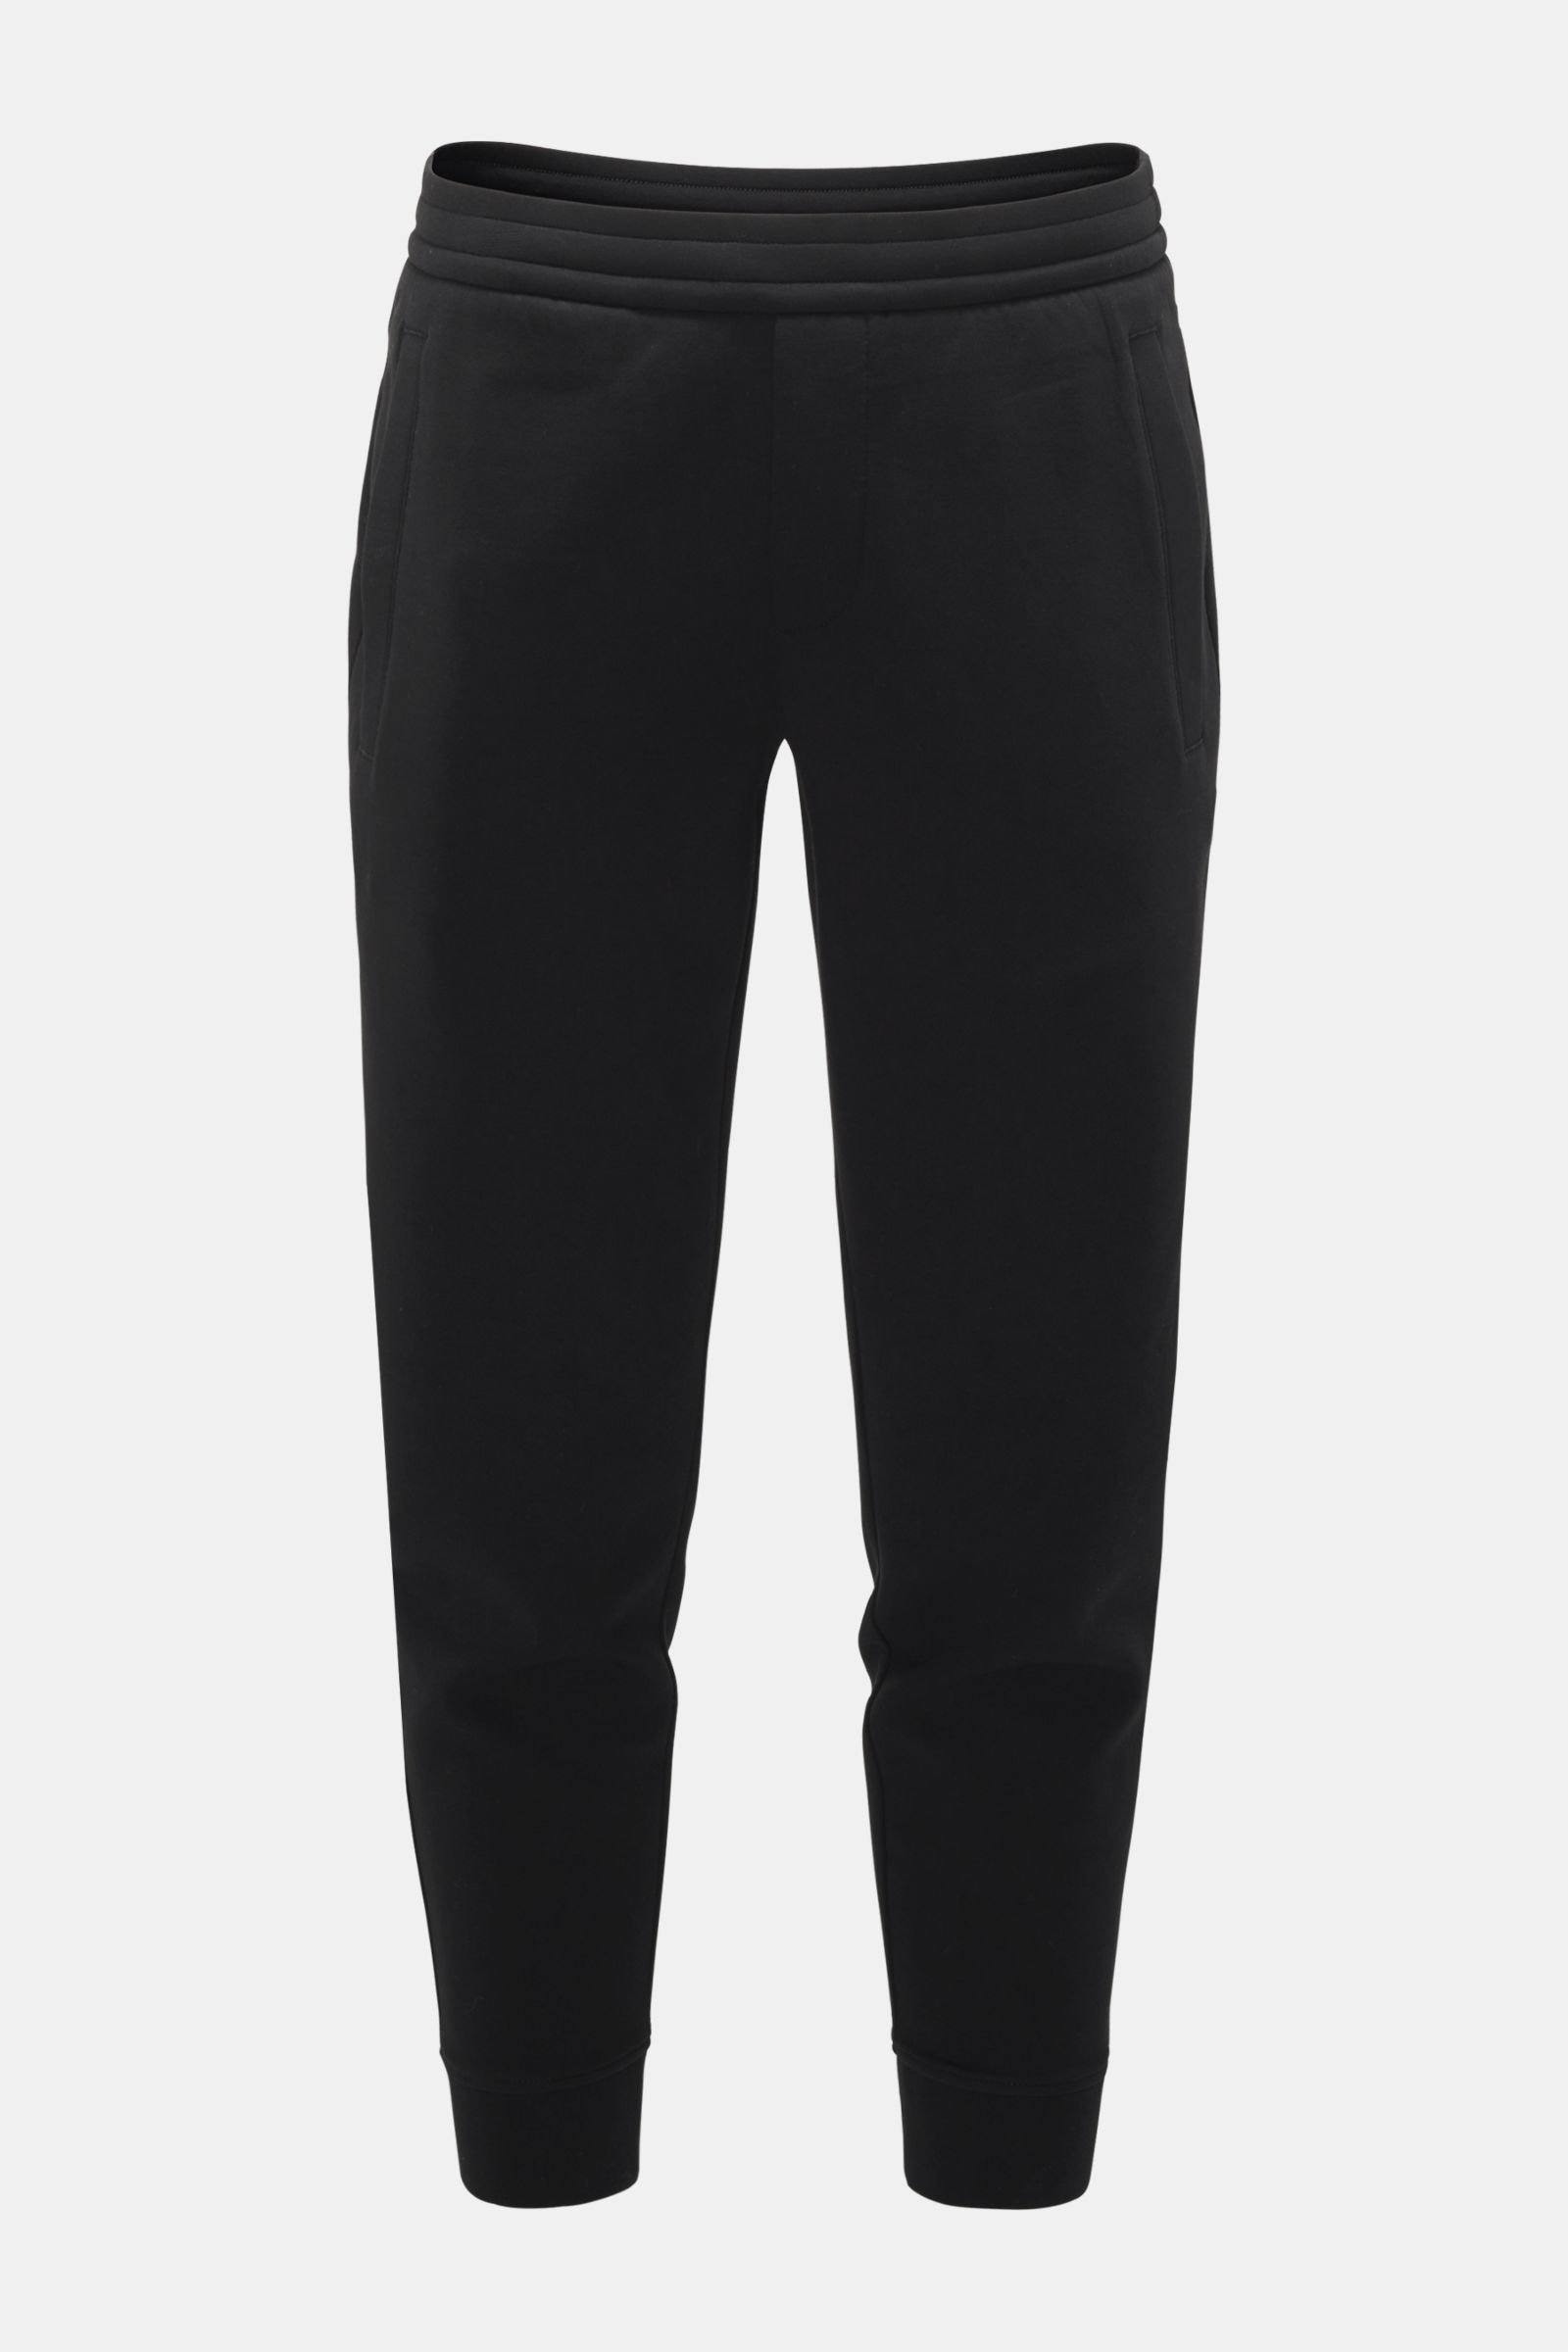 Neoprene jogger pants black